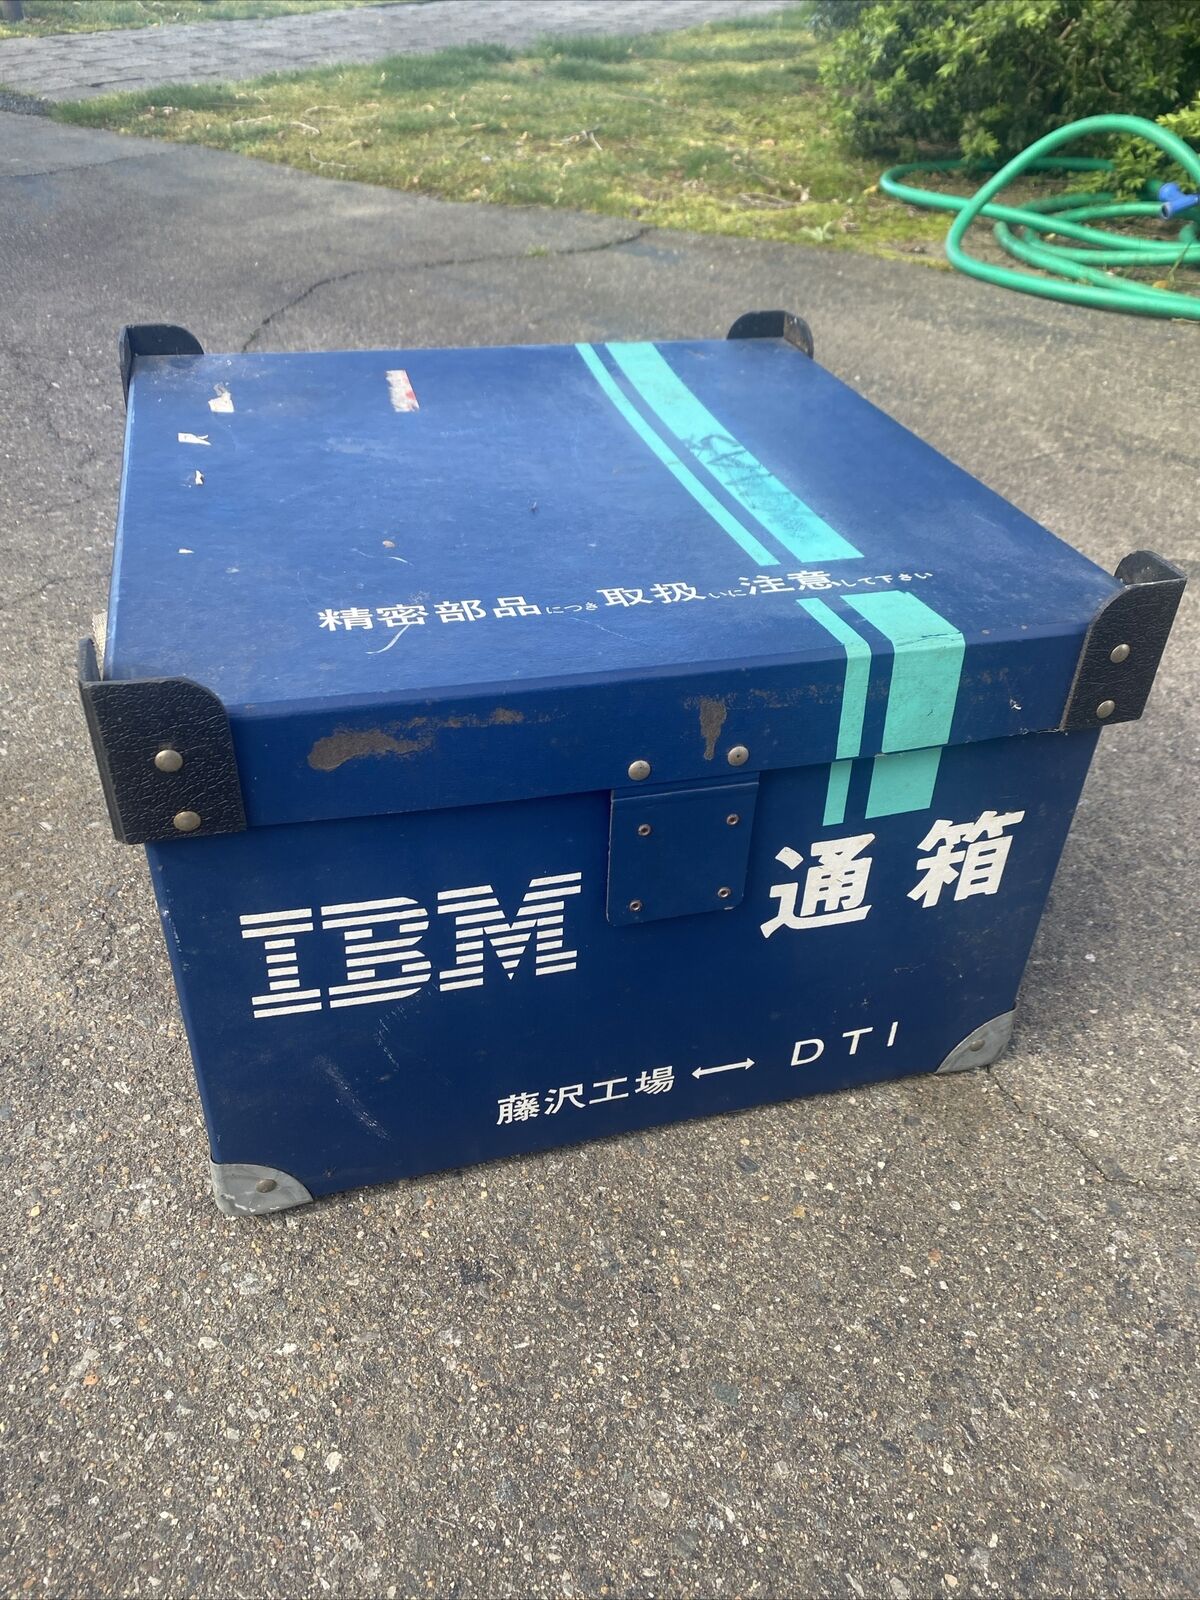 IBM Shipping Box Vintage